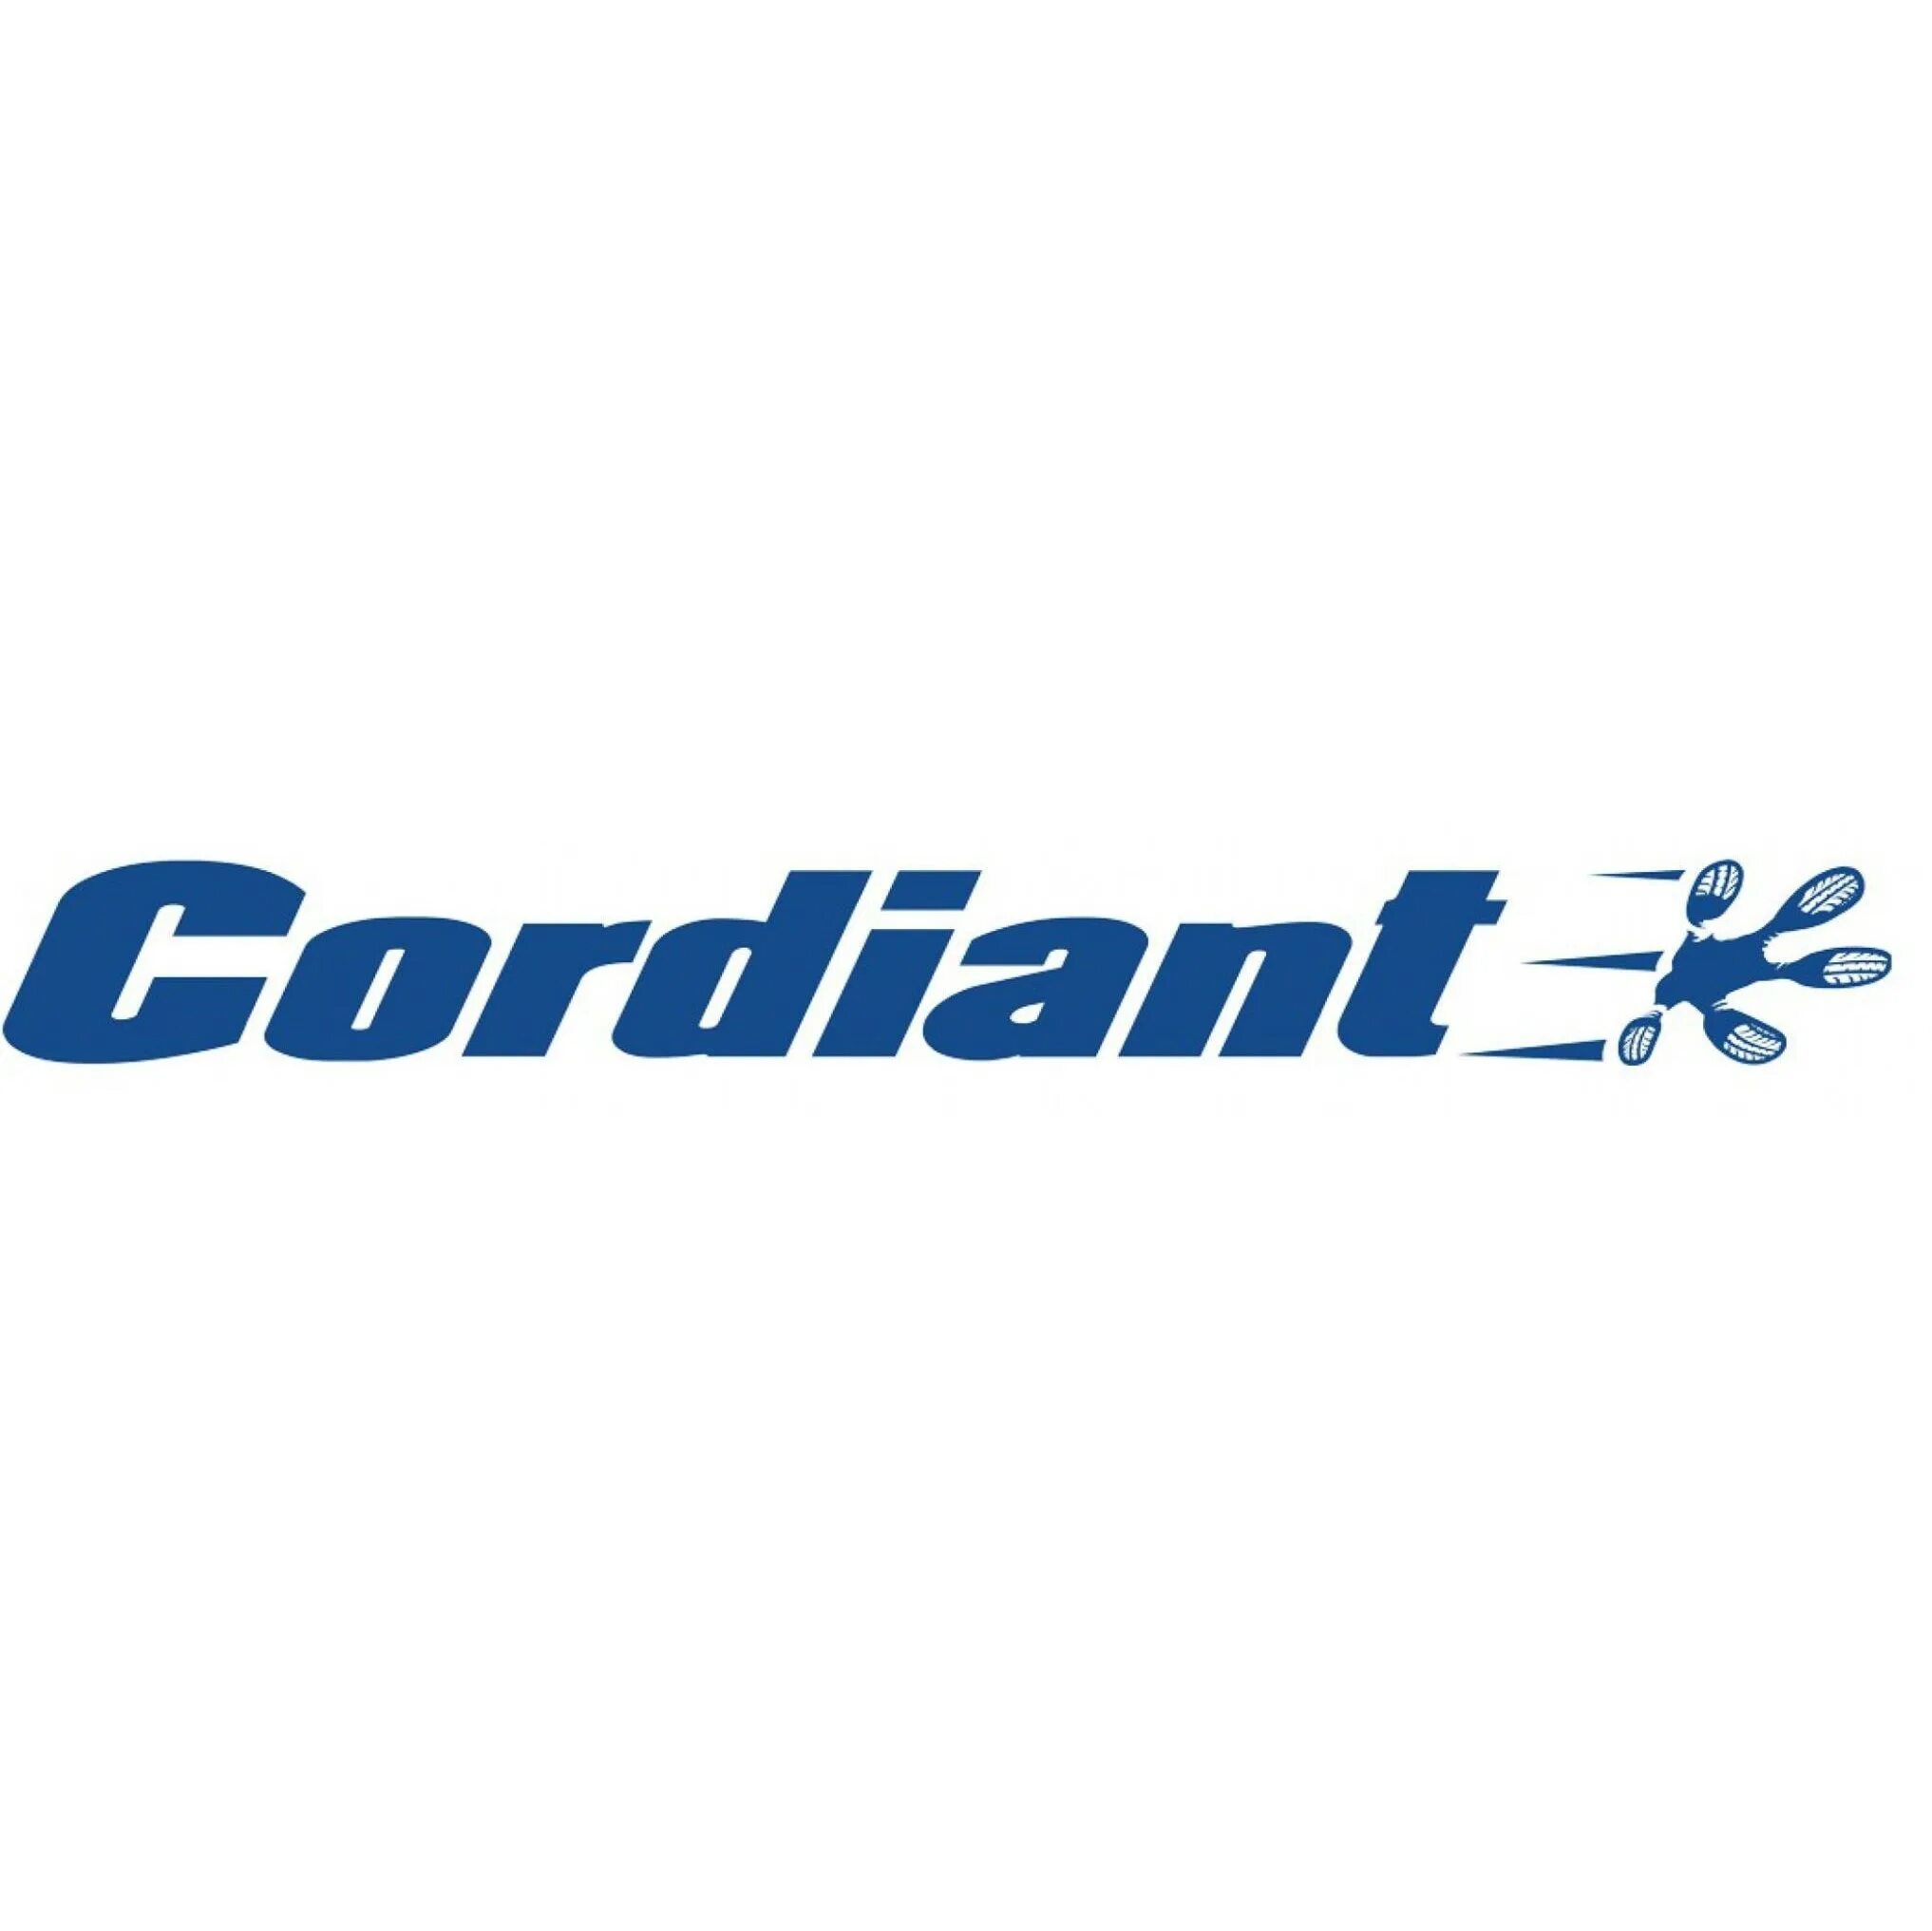 Кордиан. Кордиант бренд. Кордиант эмблема. Логотип Кордиант профессионал. Cordiant логотип вектор.